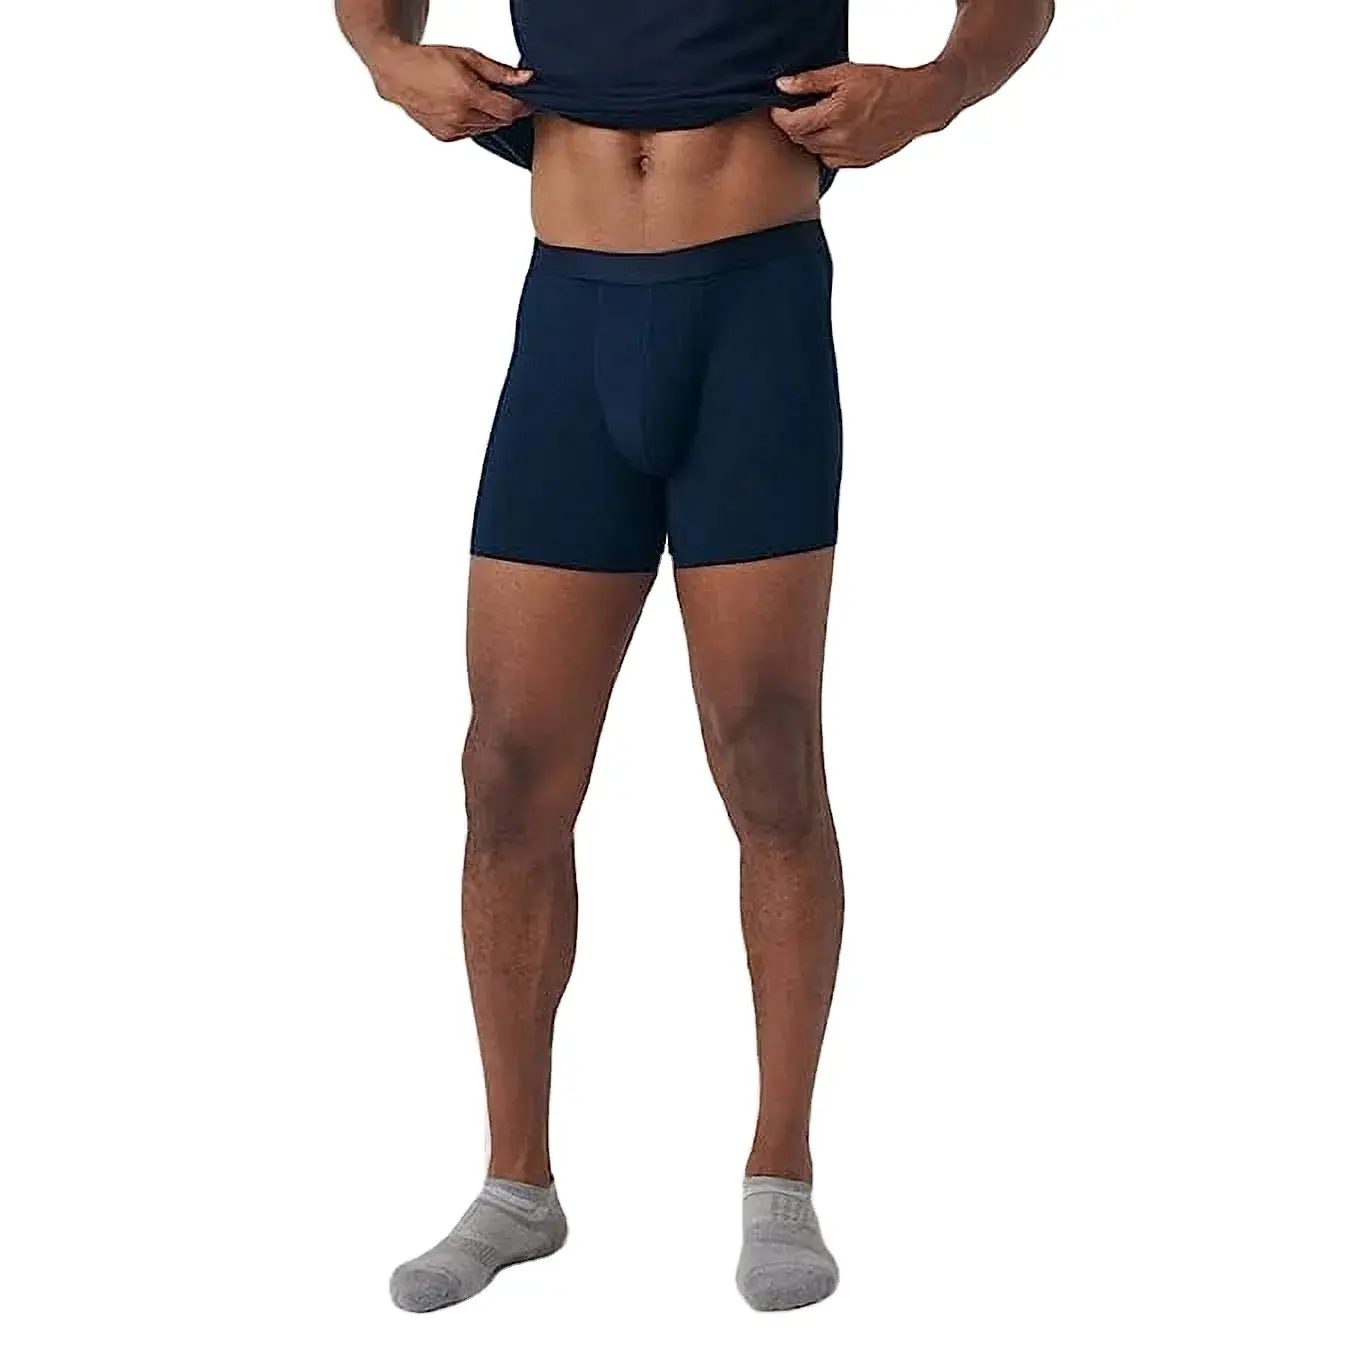 Fabrika toptan özel yüksek kalite gerçek klasik Ultra yumuşak Boxer külot erkekler için no-binmek Micromodal erkek iç çamaşırı